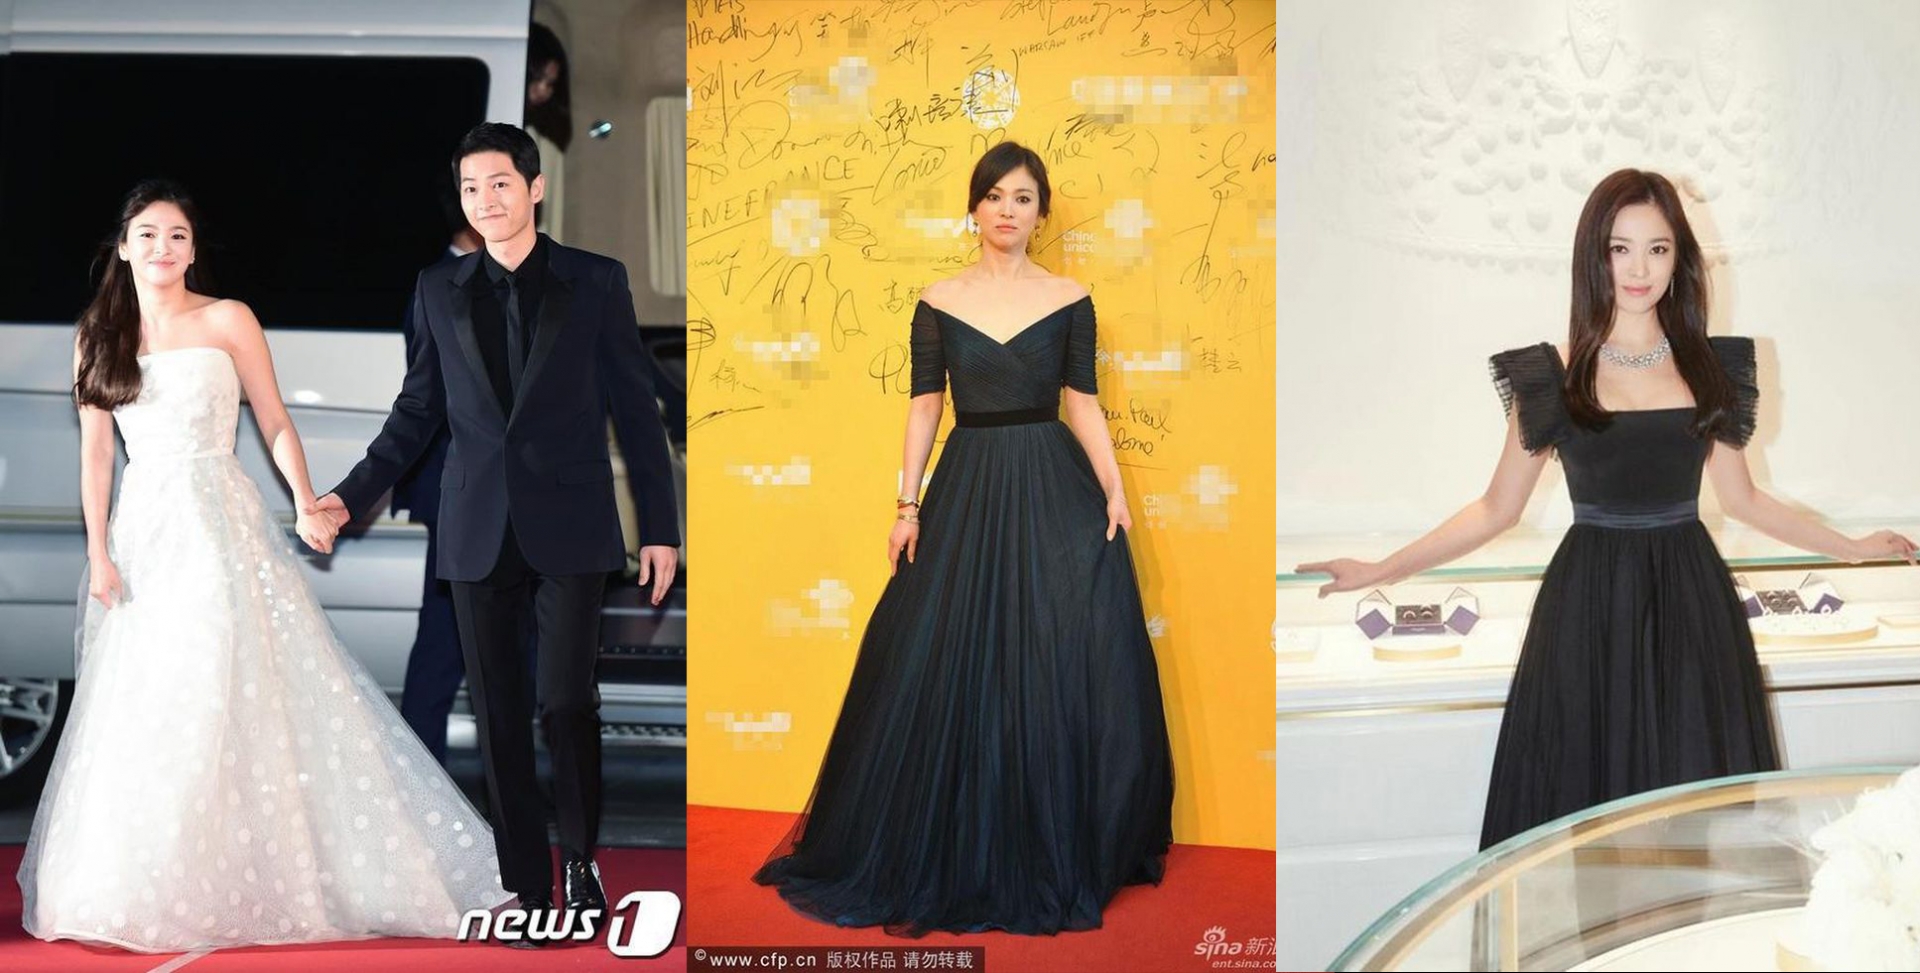 Mỗi lần Song Hye Kyo diện váy dài, cứ như nữ thần xuất hiện trên thảm đỏ. Fan cứ ủng hộ cô nàng cứ tiếp tục phát huy hình ảnh thời trang này.